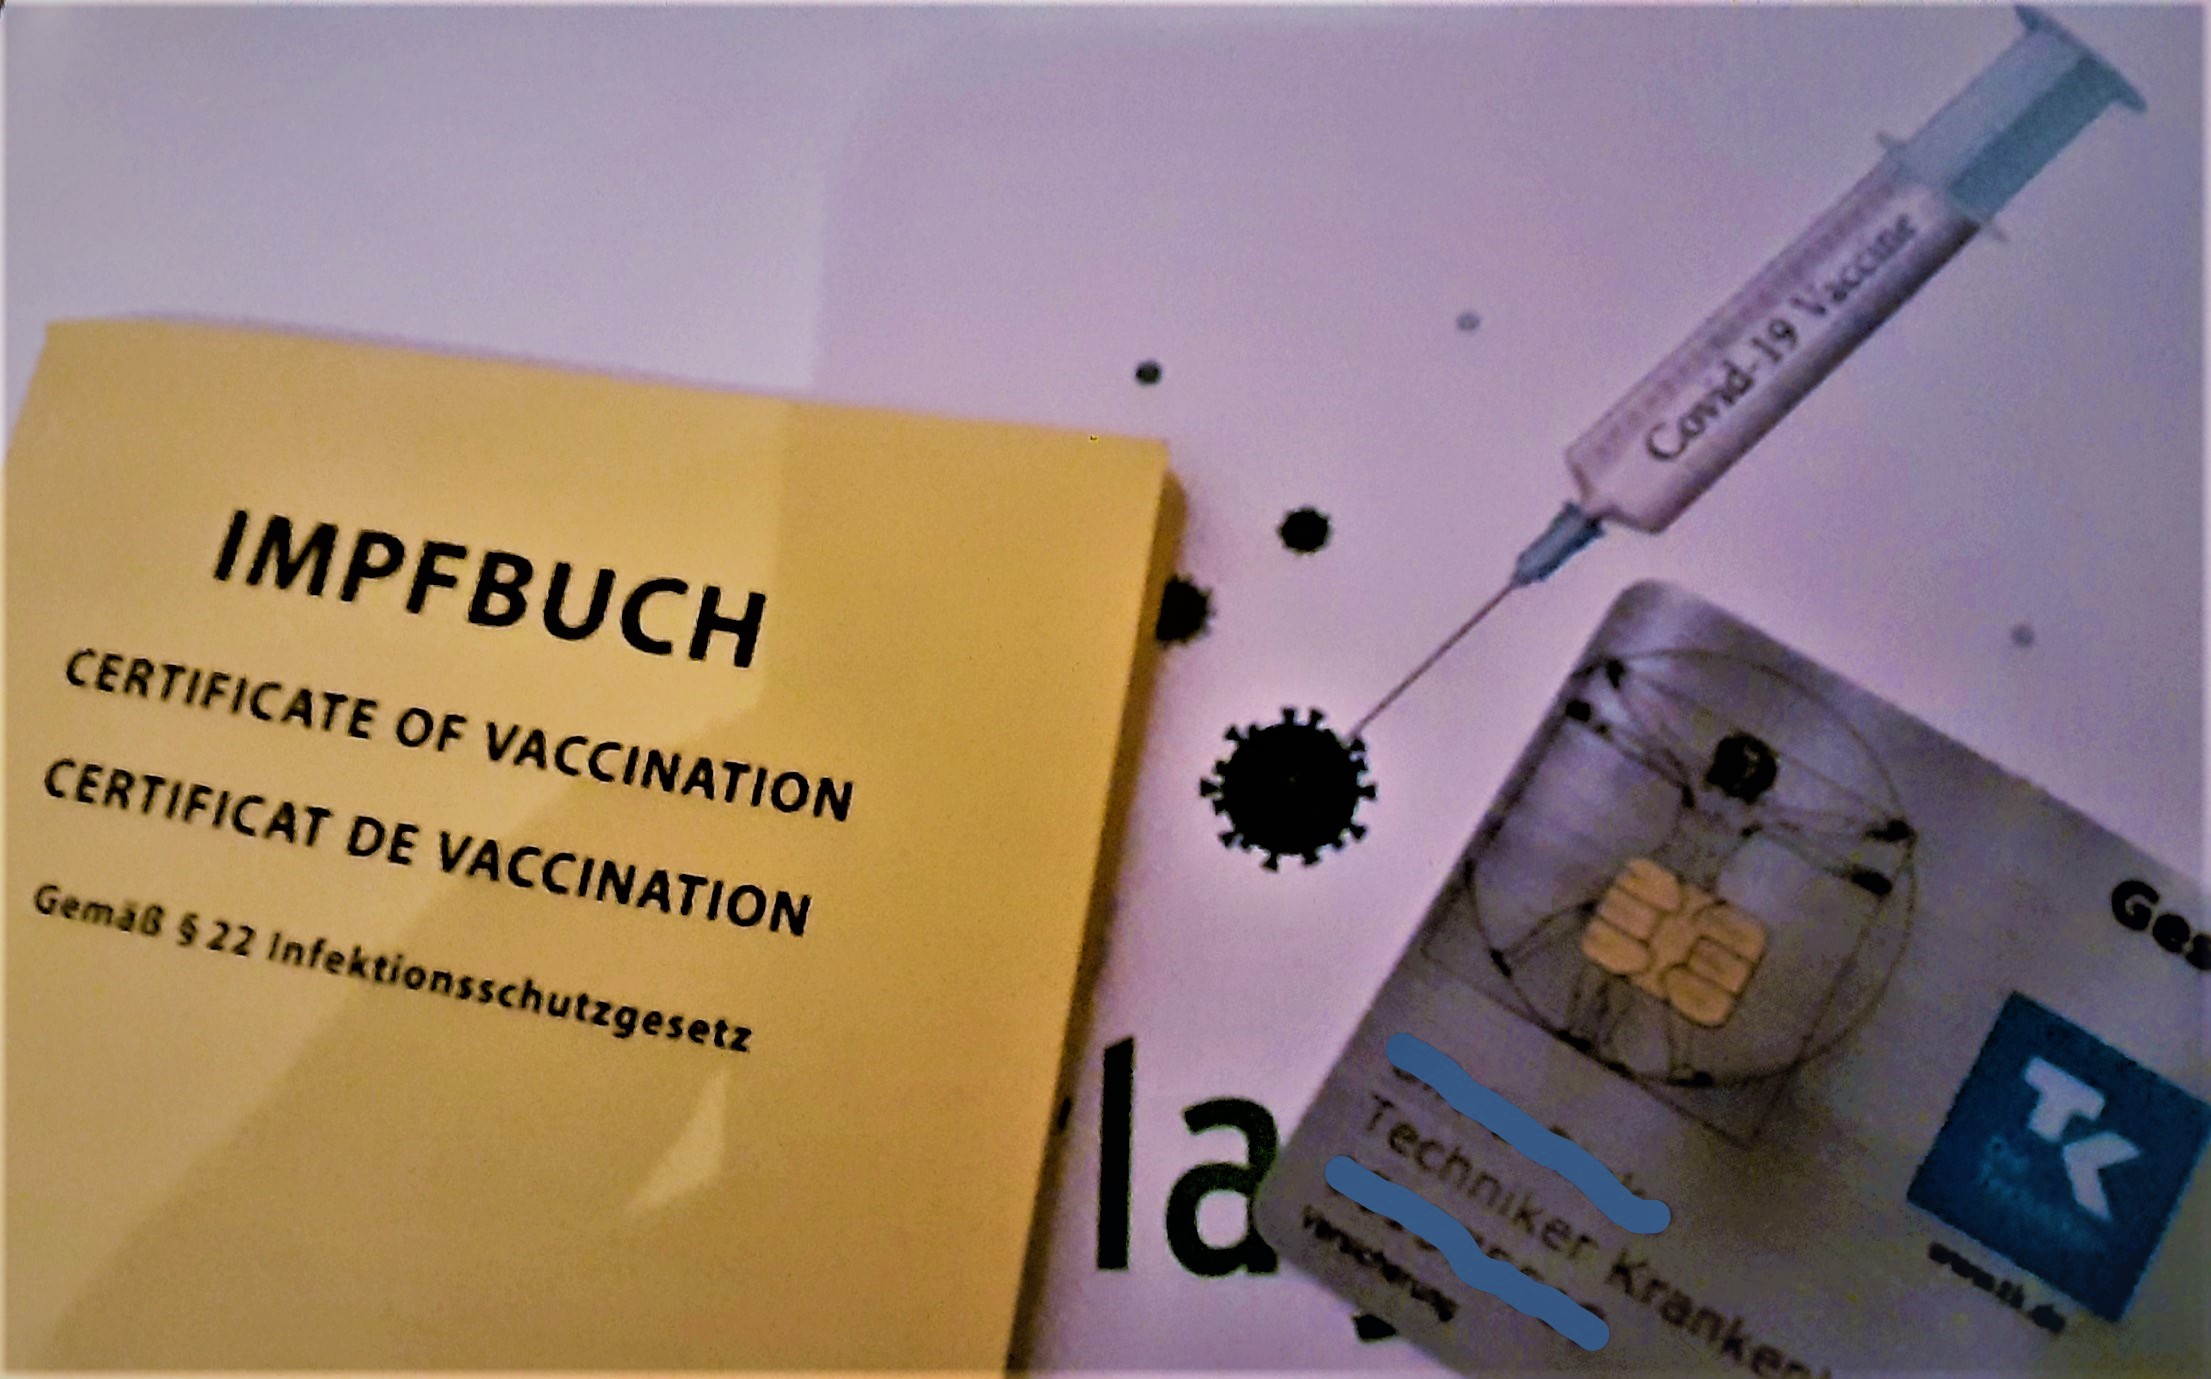 Einrichtungsbezogene Impfpflicht startet – Vorerst kein hartes Durchgreifen in NRW